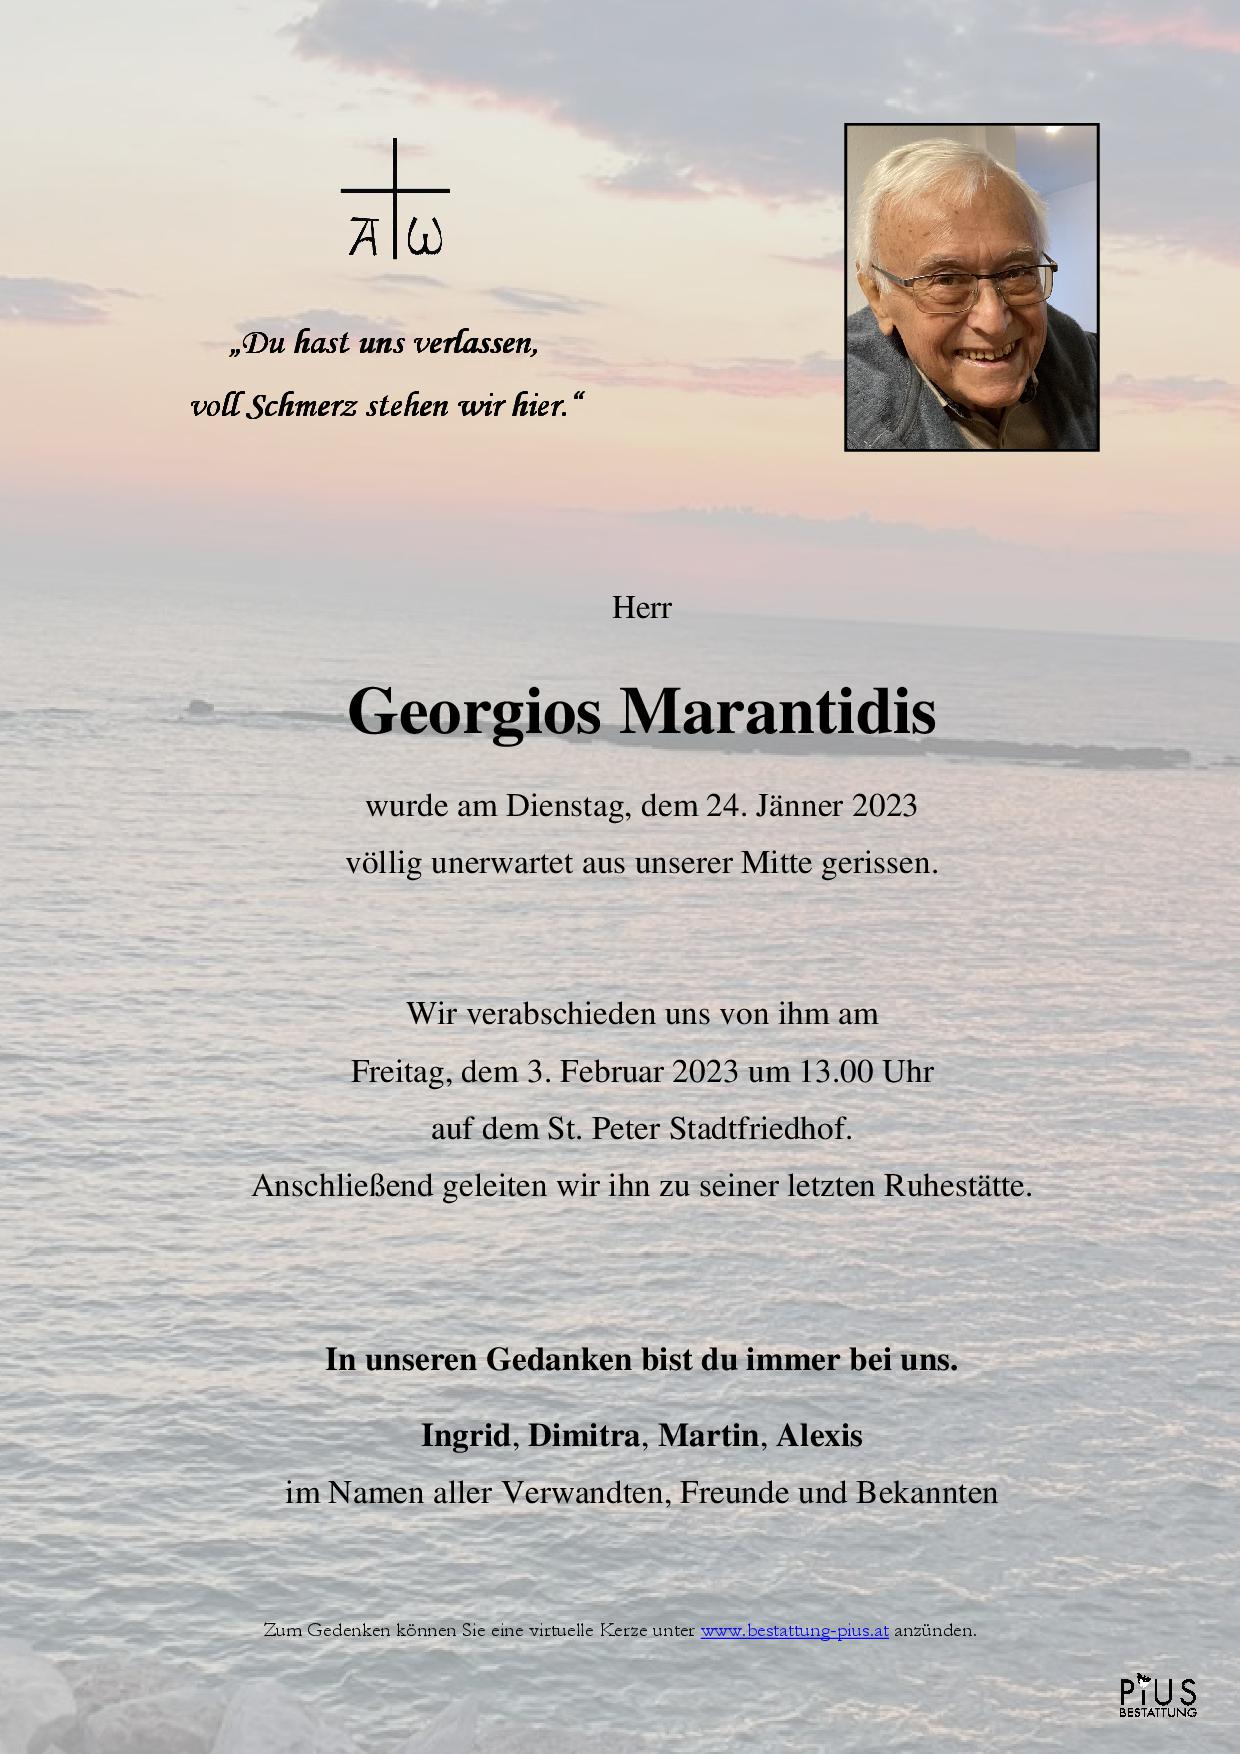 Georgios Marantidis